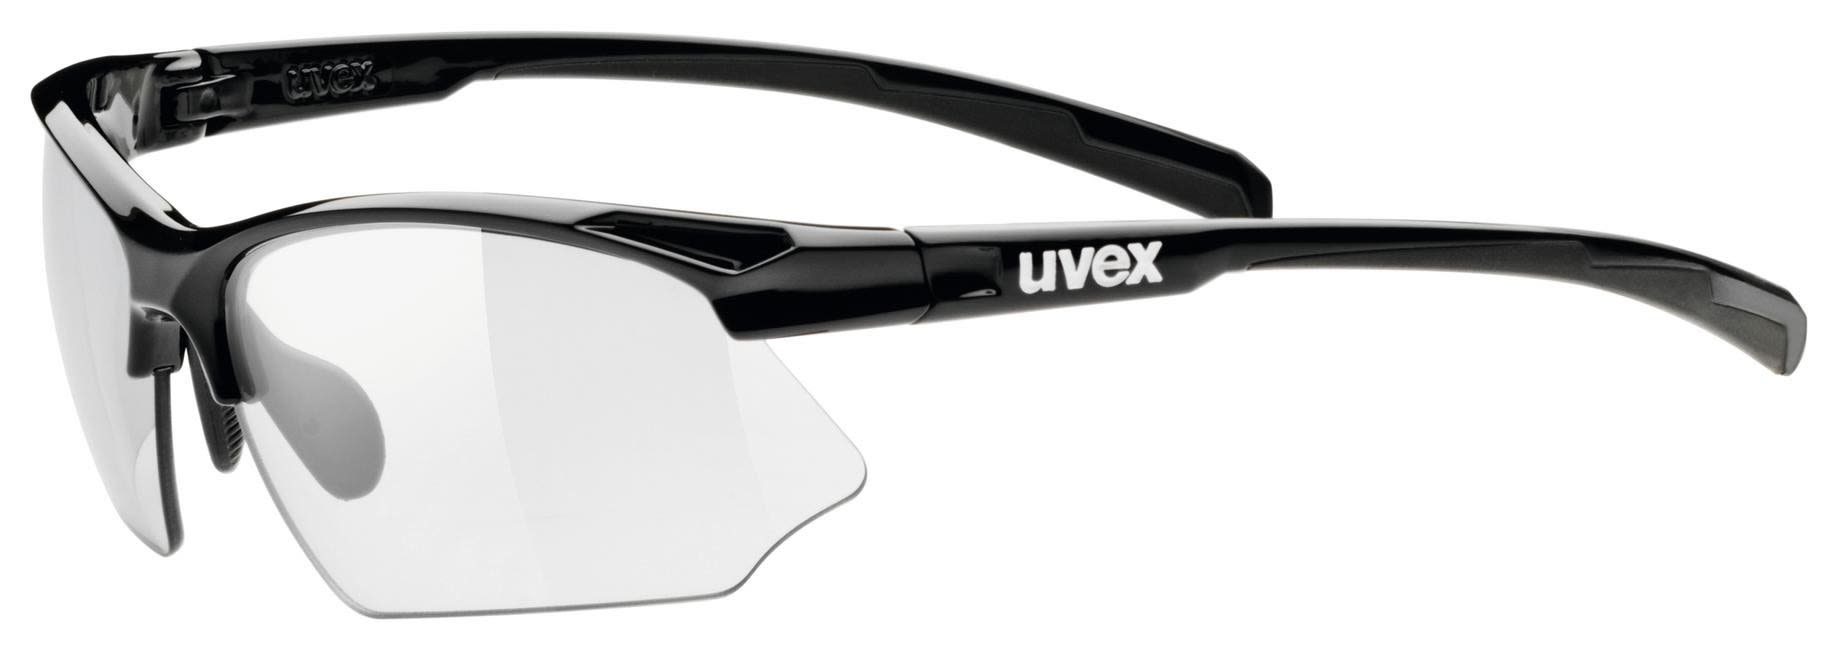 Sportstyle Accessoires Sportbrille Uvex Uvex Cat. - Variomatic Vario Black Smoke 802 1-3